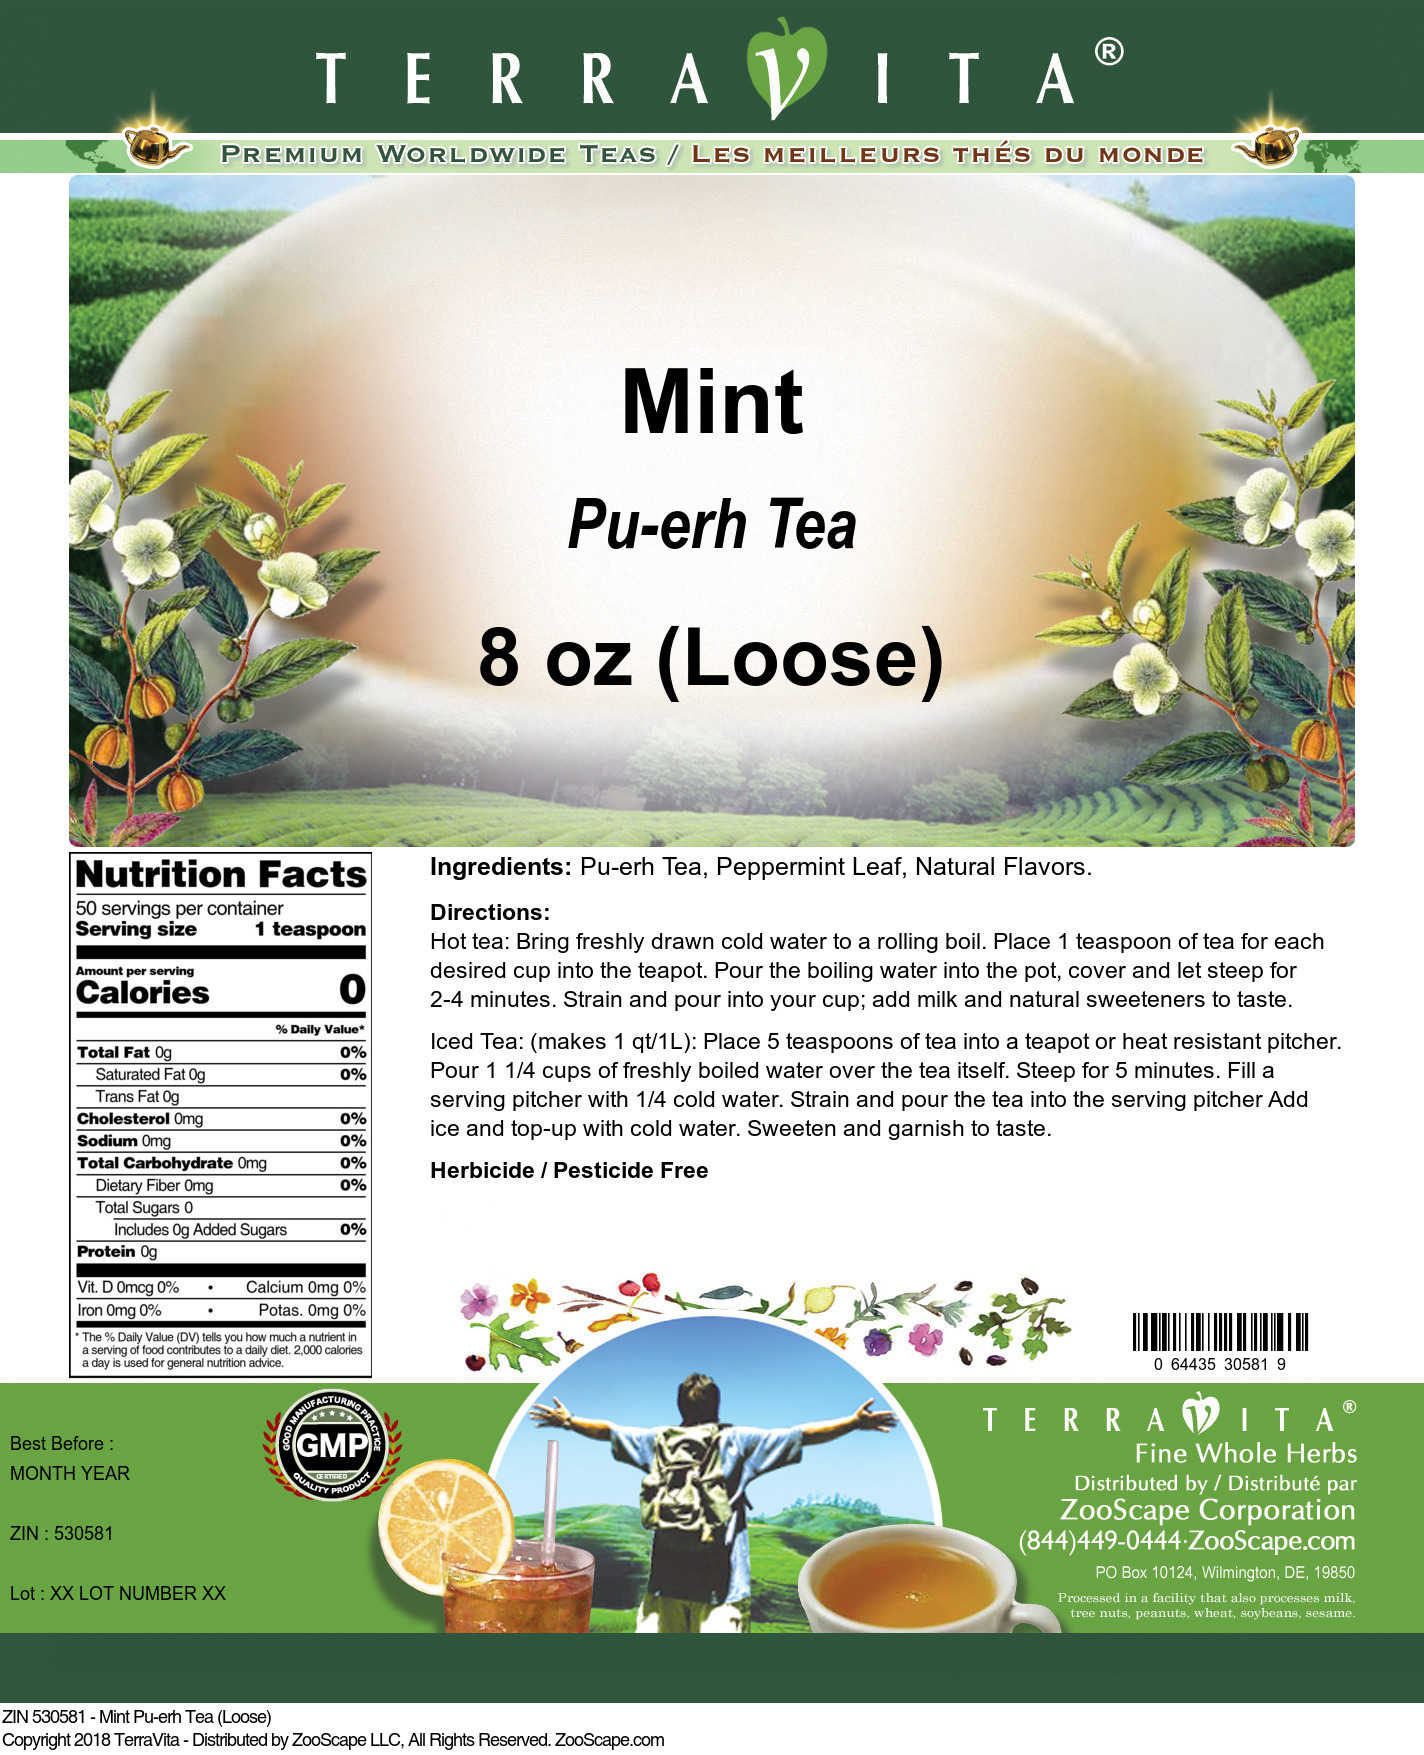 Mint Pu-erh Tea (Loose) - Label